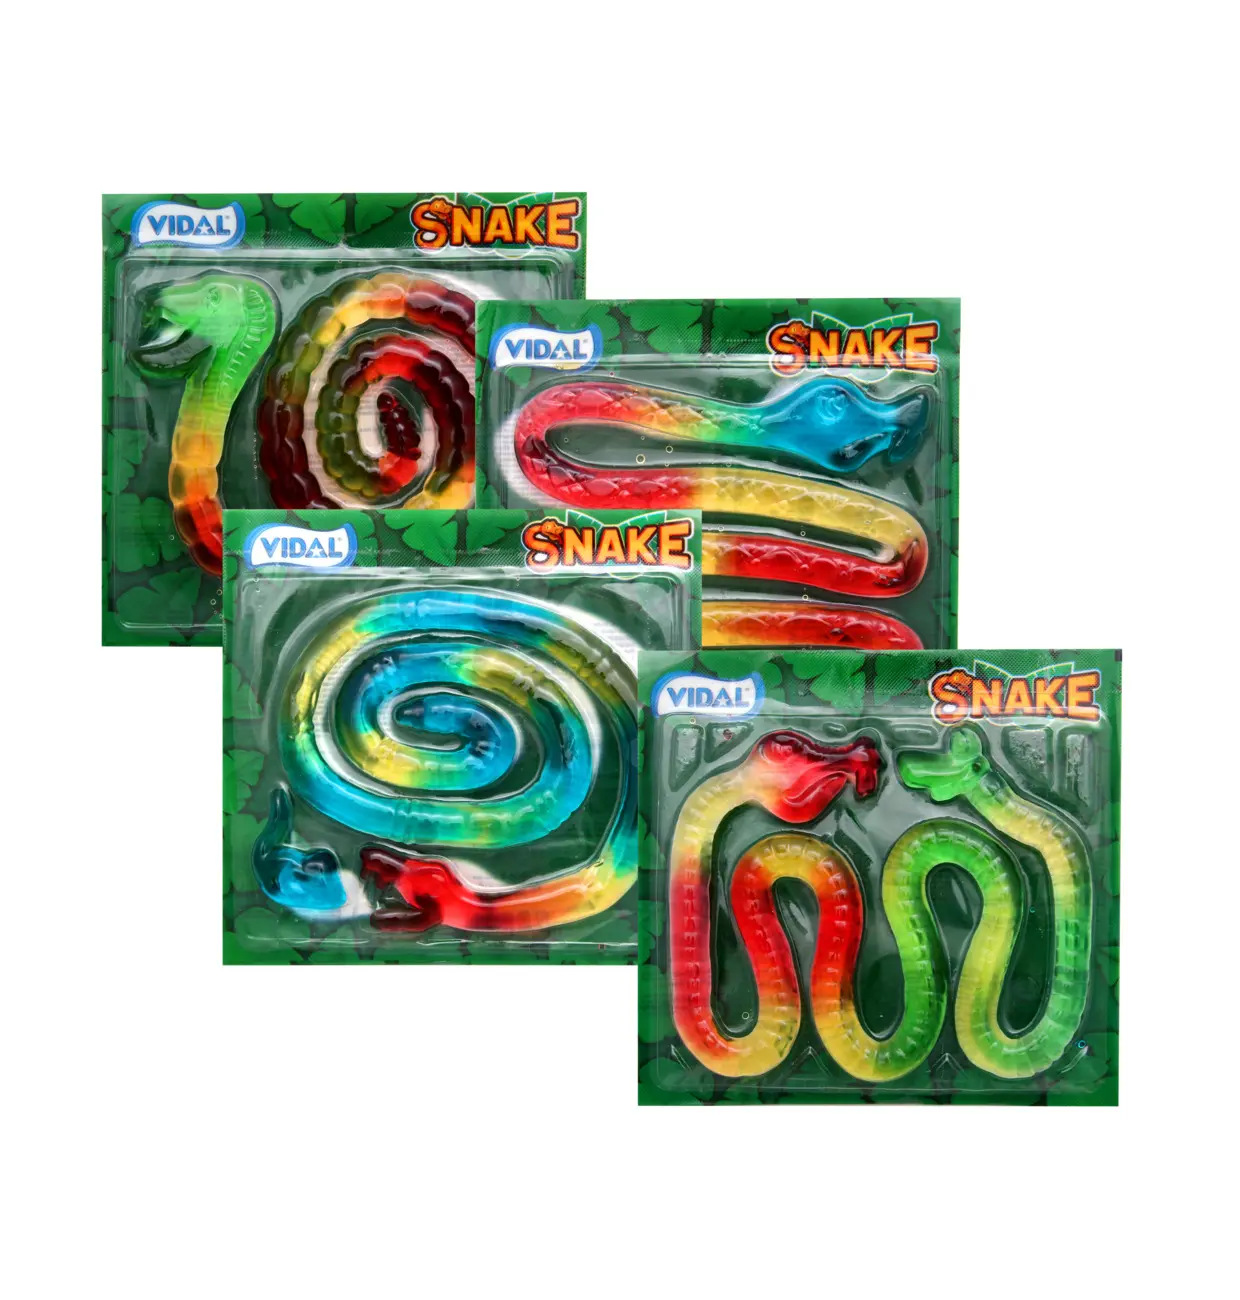 Vidal Jelly Snake 66g x 11